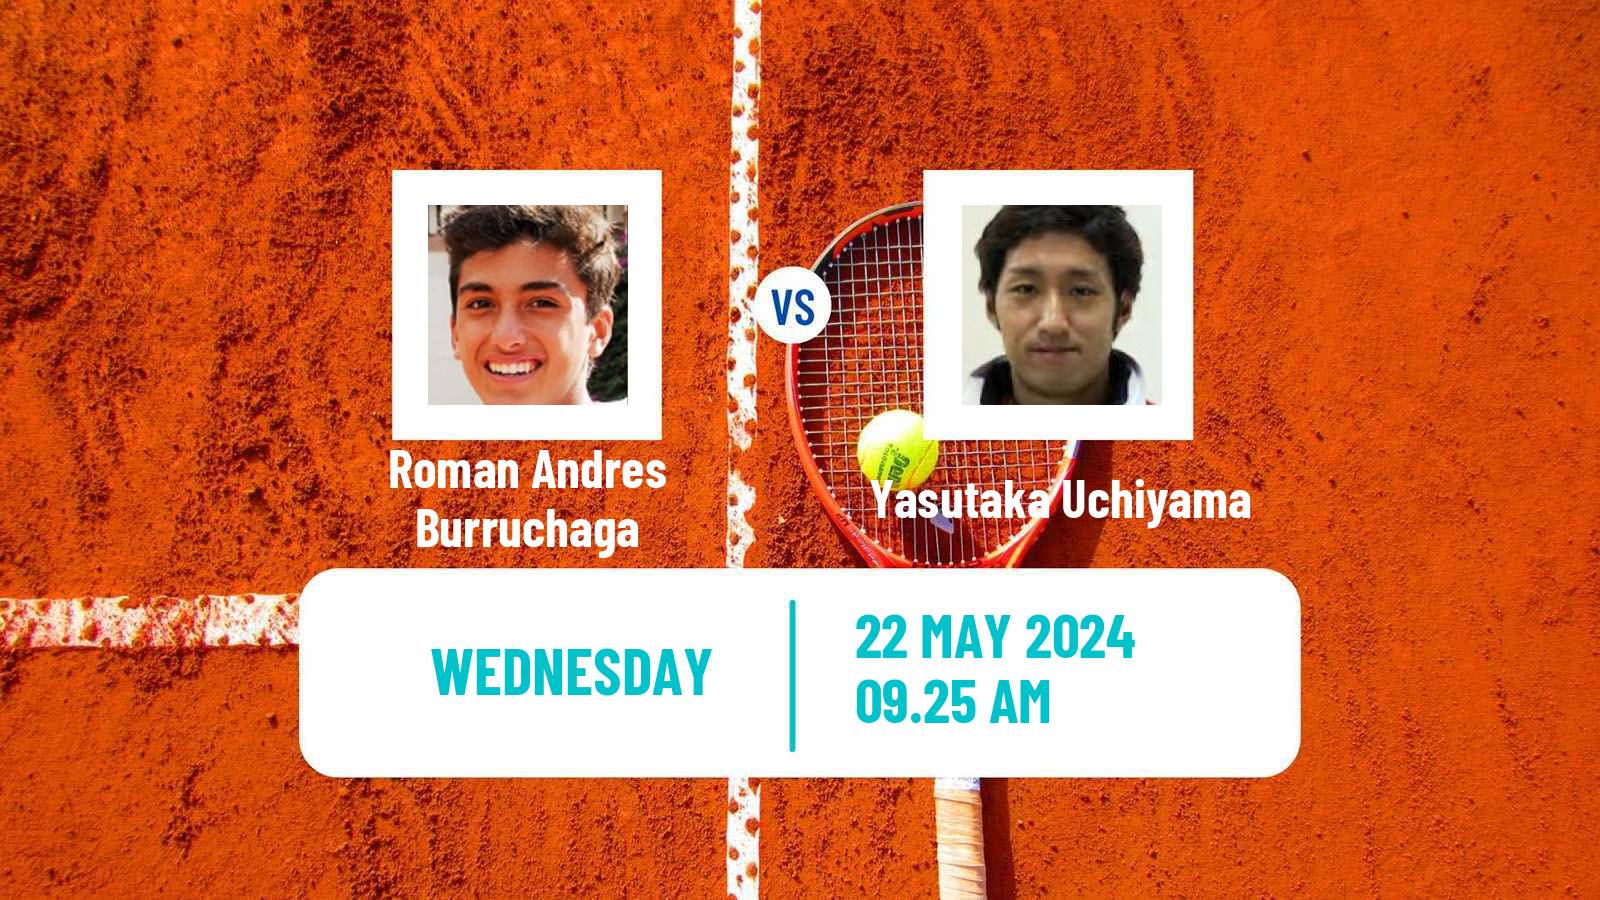 Tennis ATP Roland Garros Roman Andres Burruchaga - Yasutaka Uchiyama